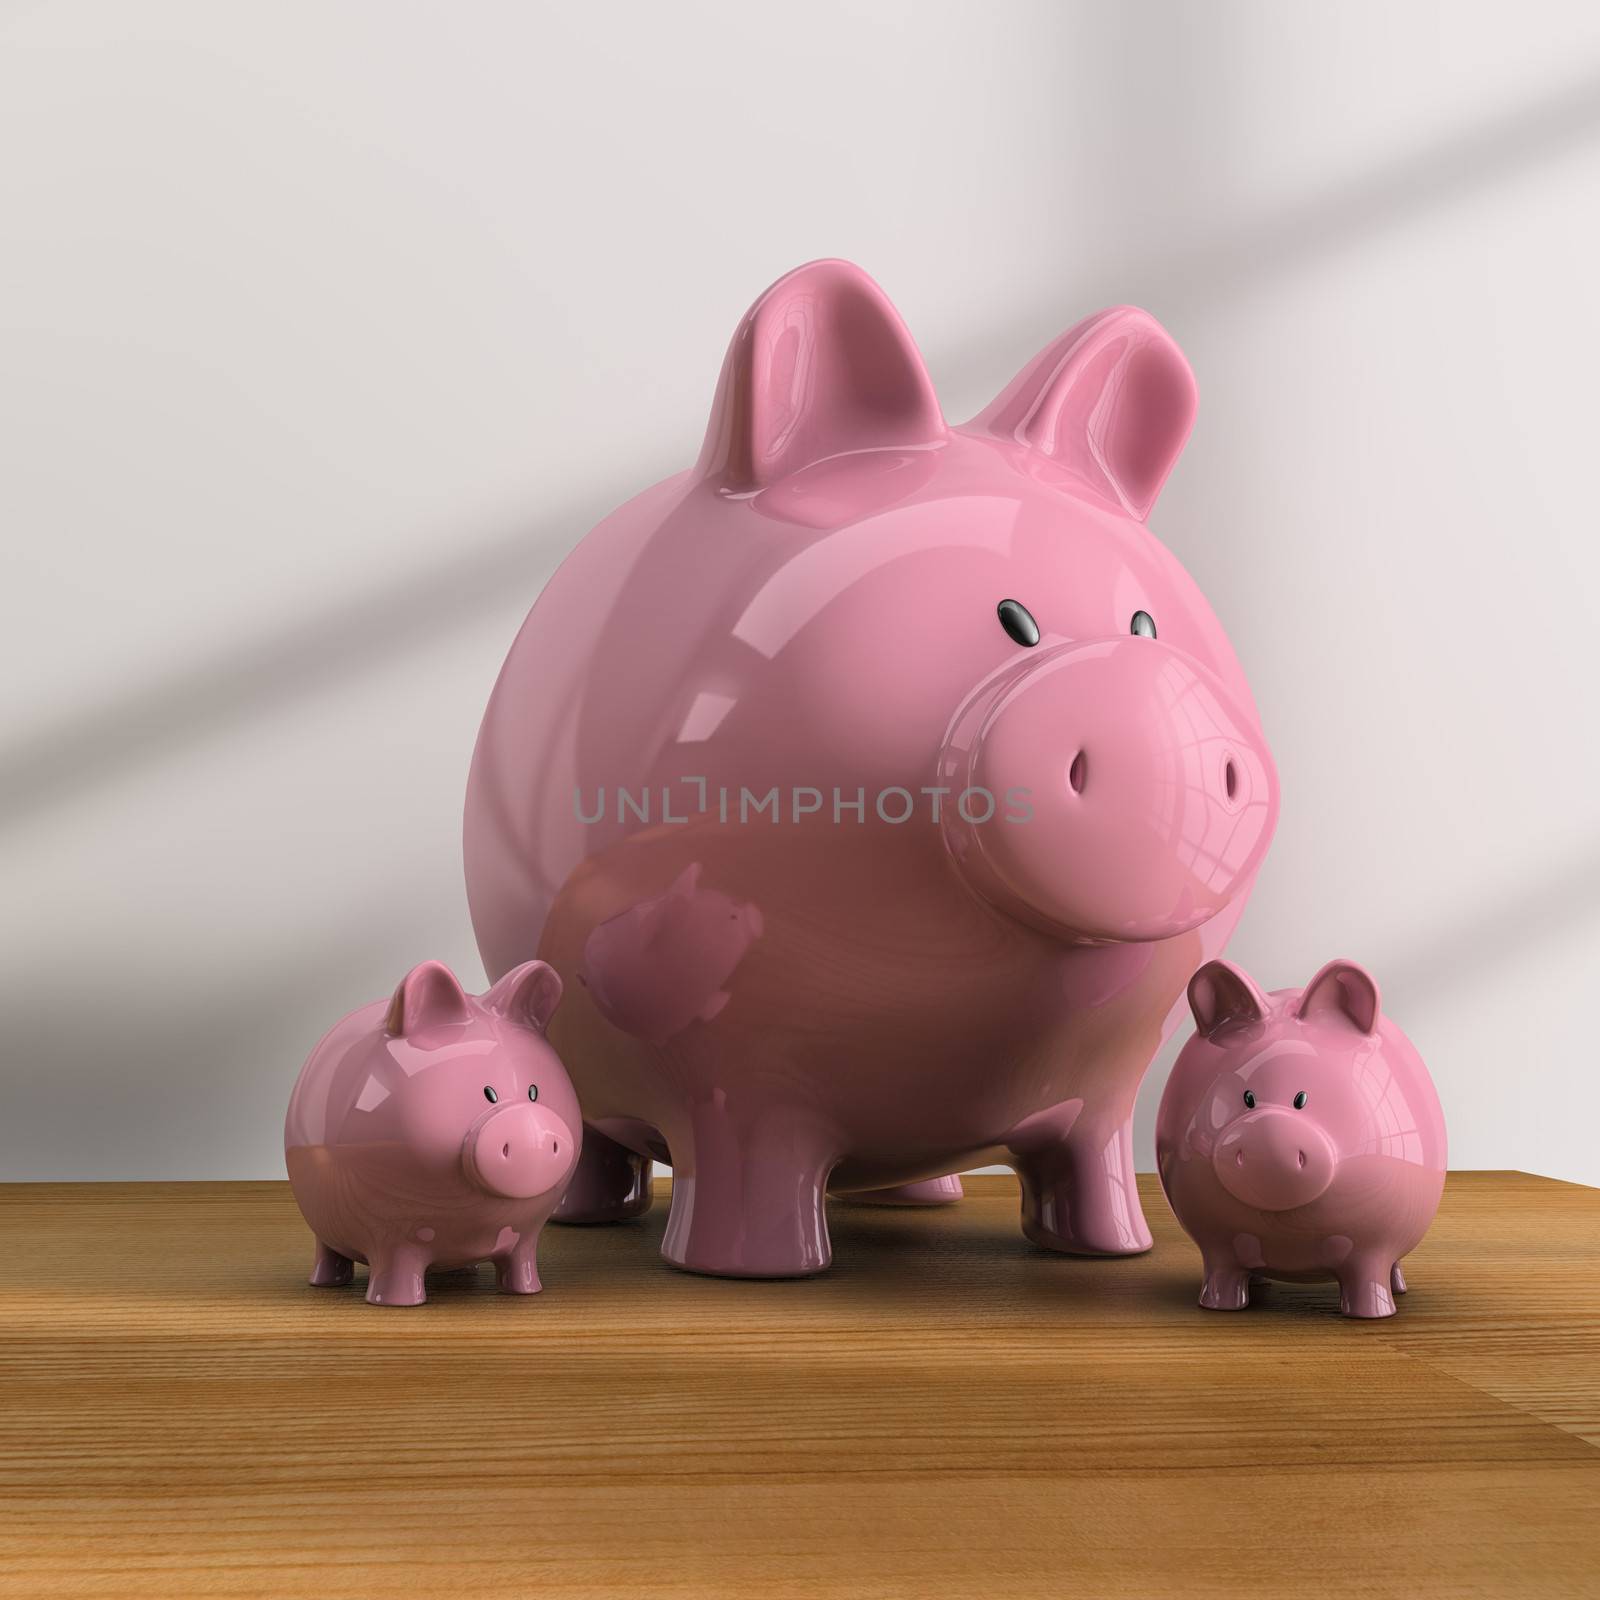 Piggy bank by dynamicfoto